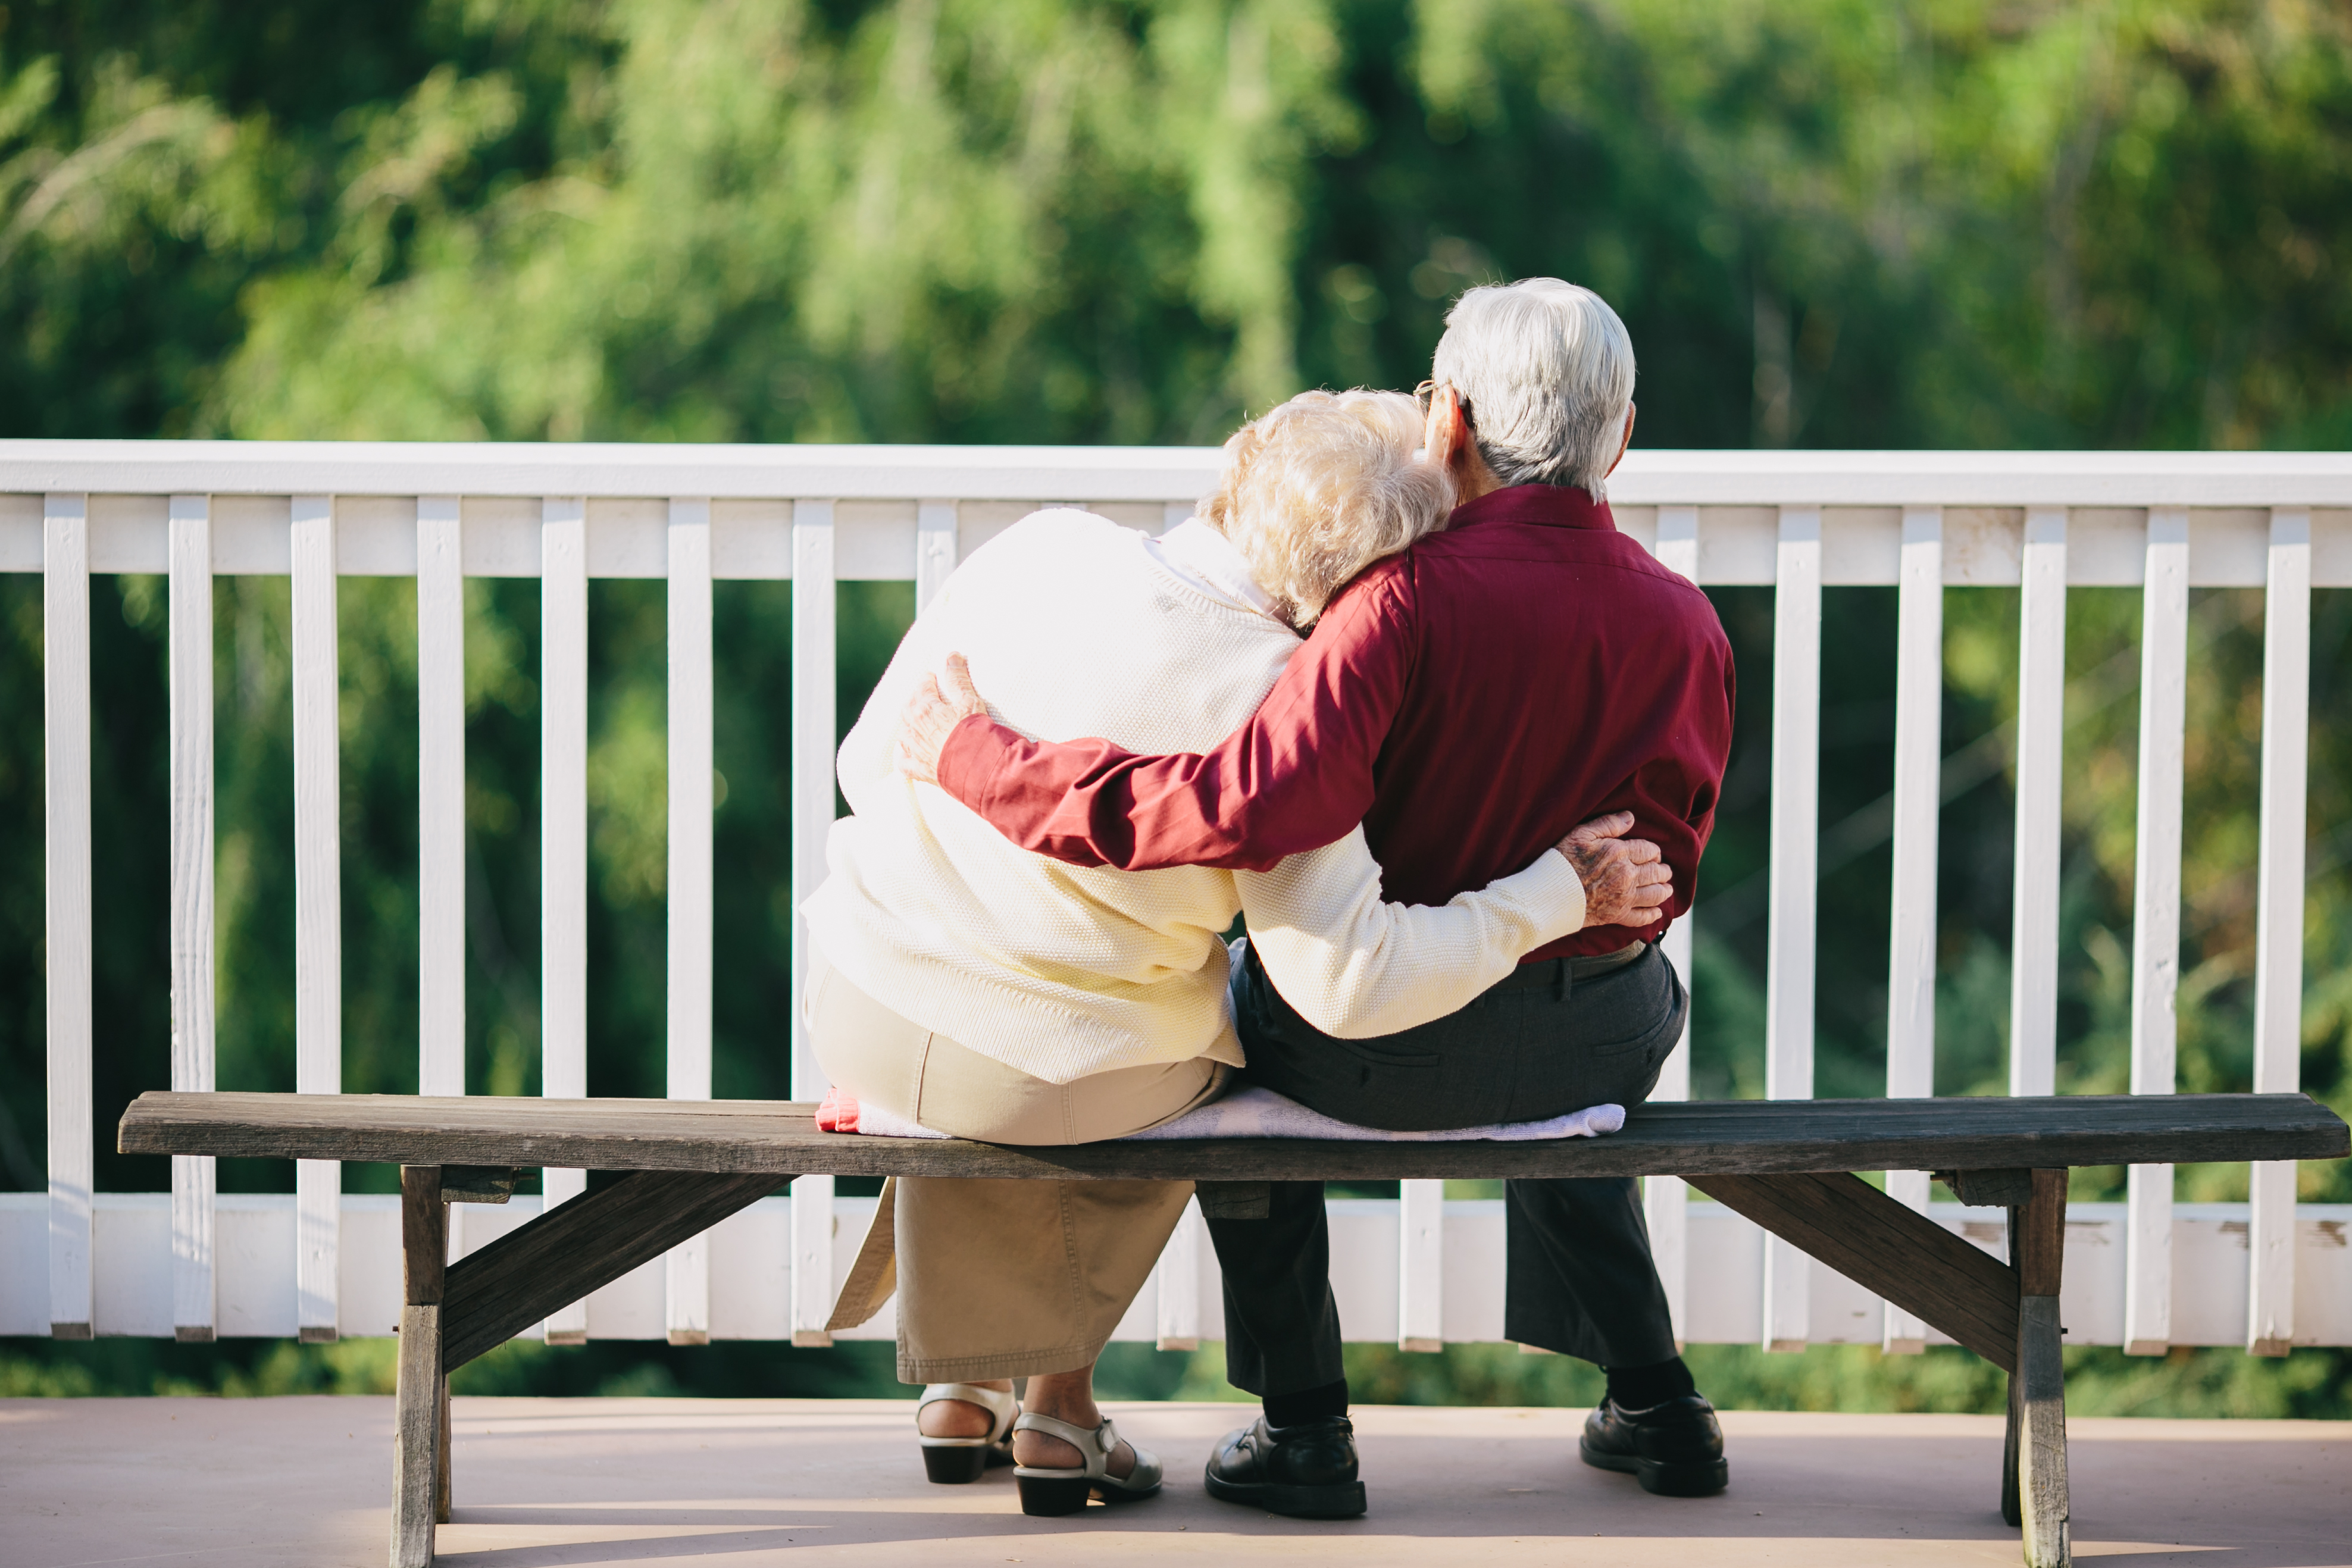 Una pareja de ancianos se abraza sentada en un banco al aire libre | Fuente: Shutterstock